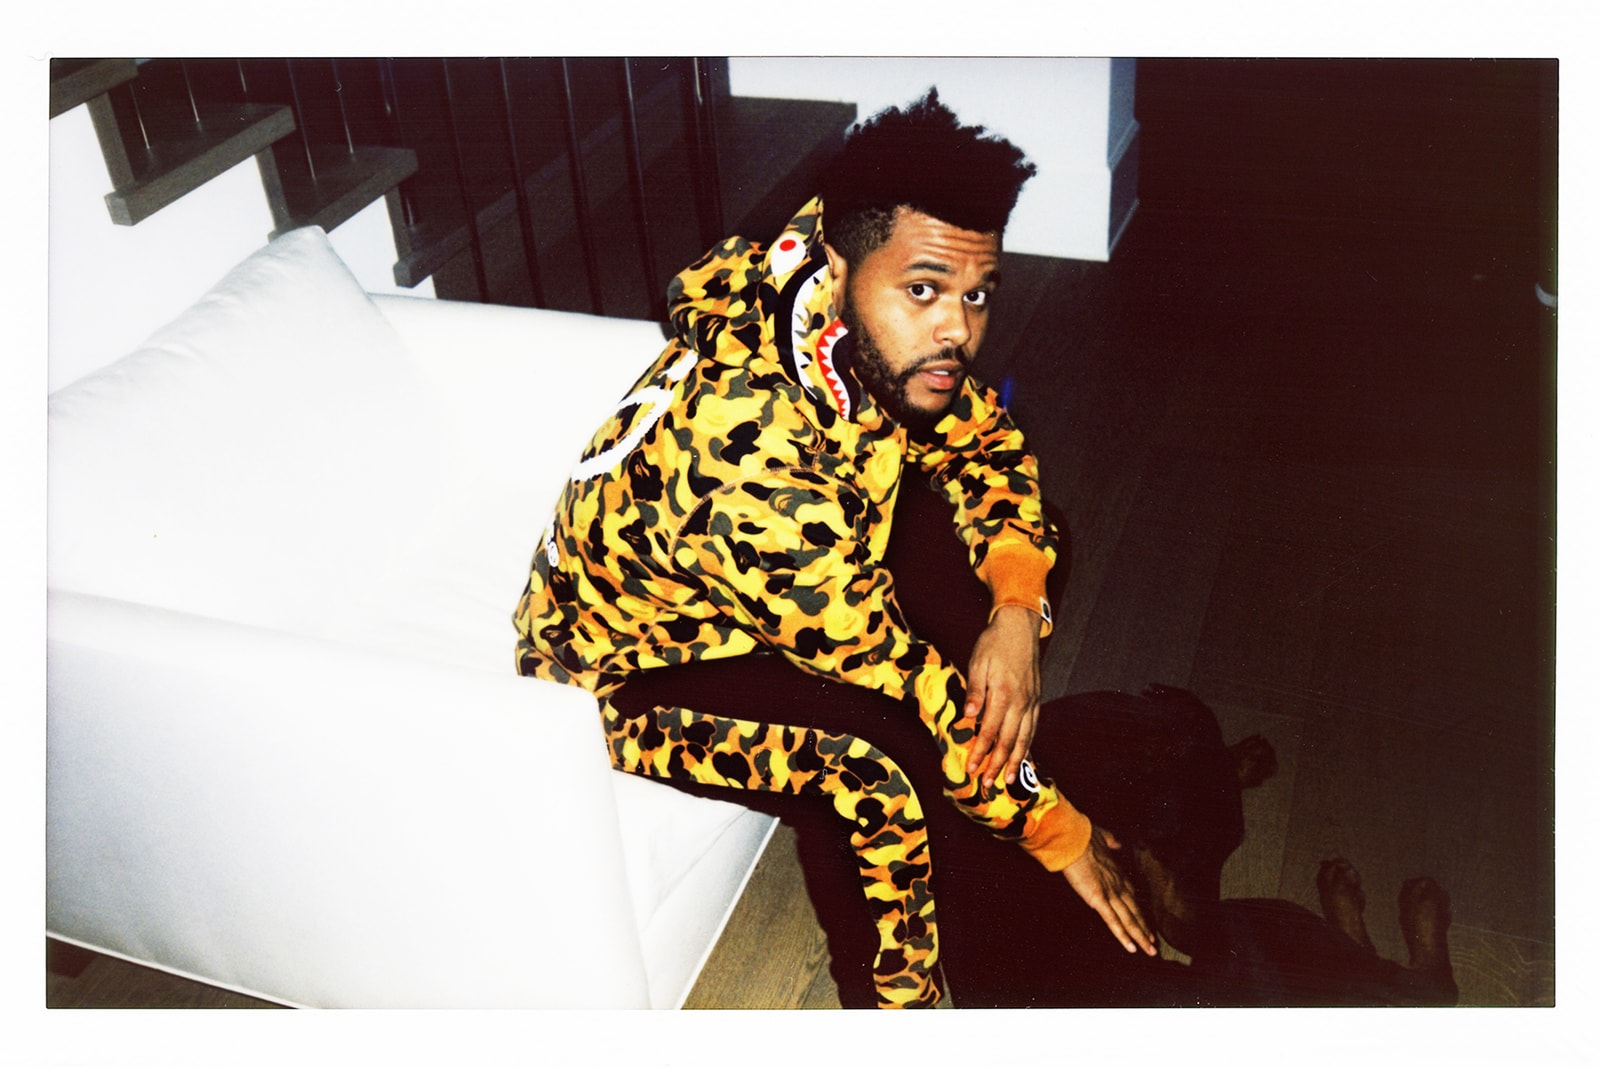 見逃したくない今週のリリースアイテム 7 選（2018|7/30~8/5） The Weeknd主宰の〈XO〉x〈A BATHING APE®〉によるコラボカプセルや〈Off-White™〉x〈Nike〉のAir Presto “White”が満を持して登場 HYPEBEAST ハイプビースト